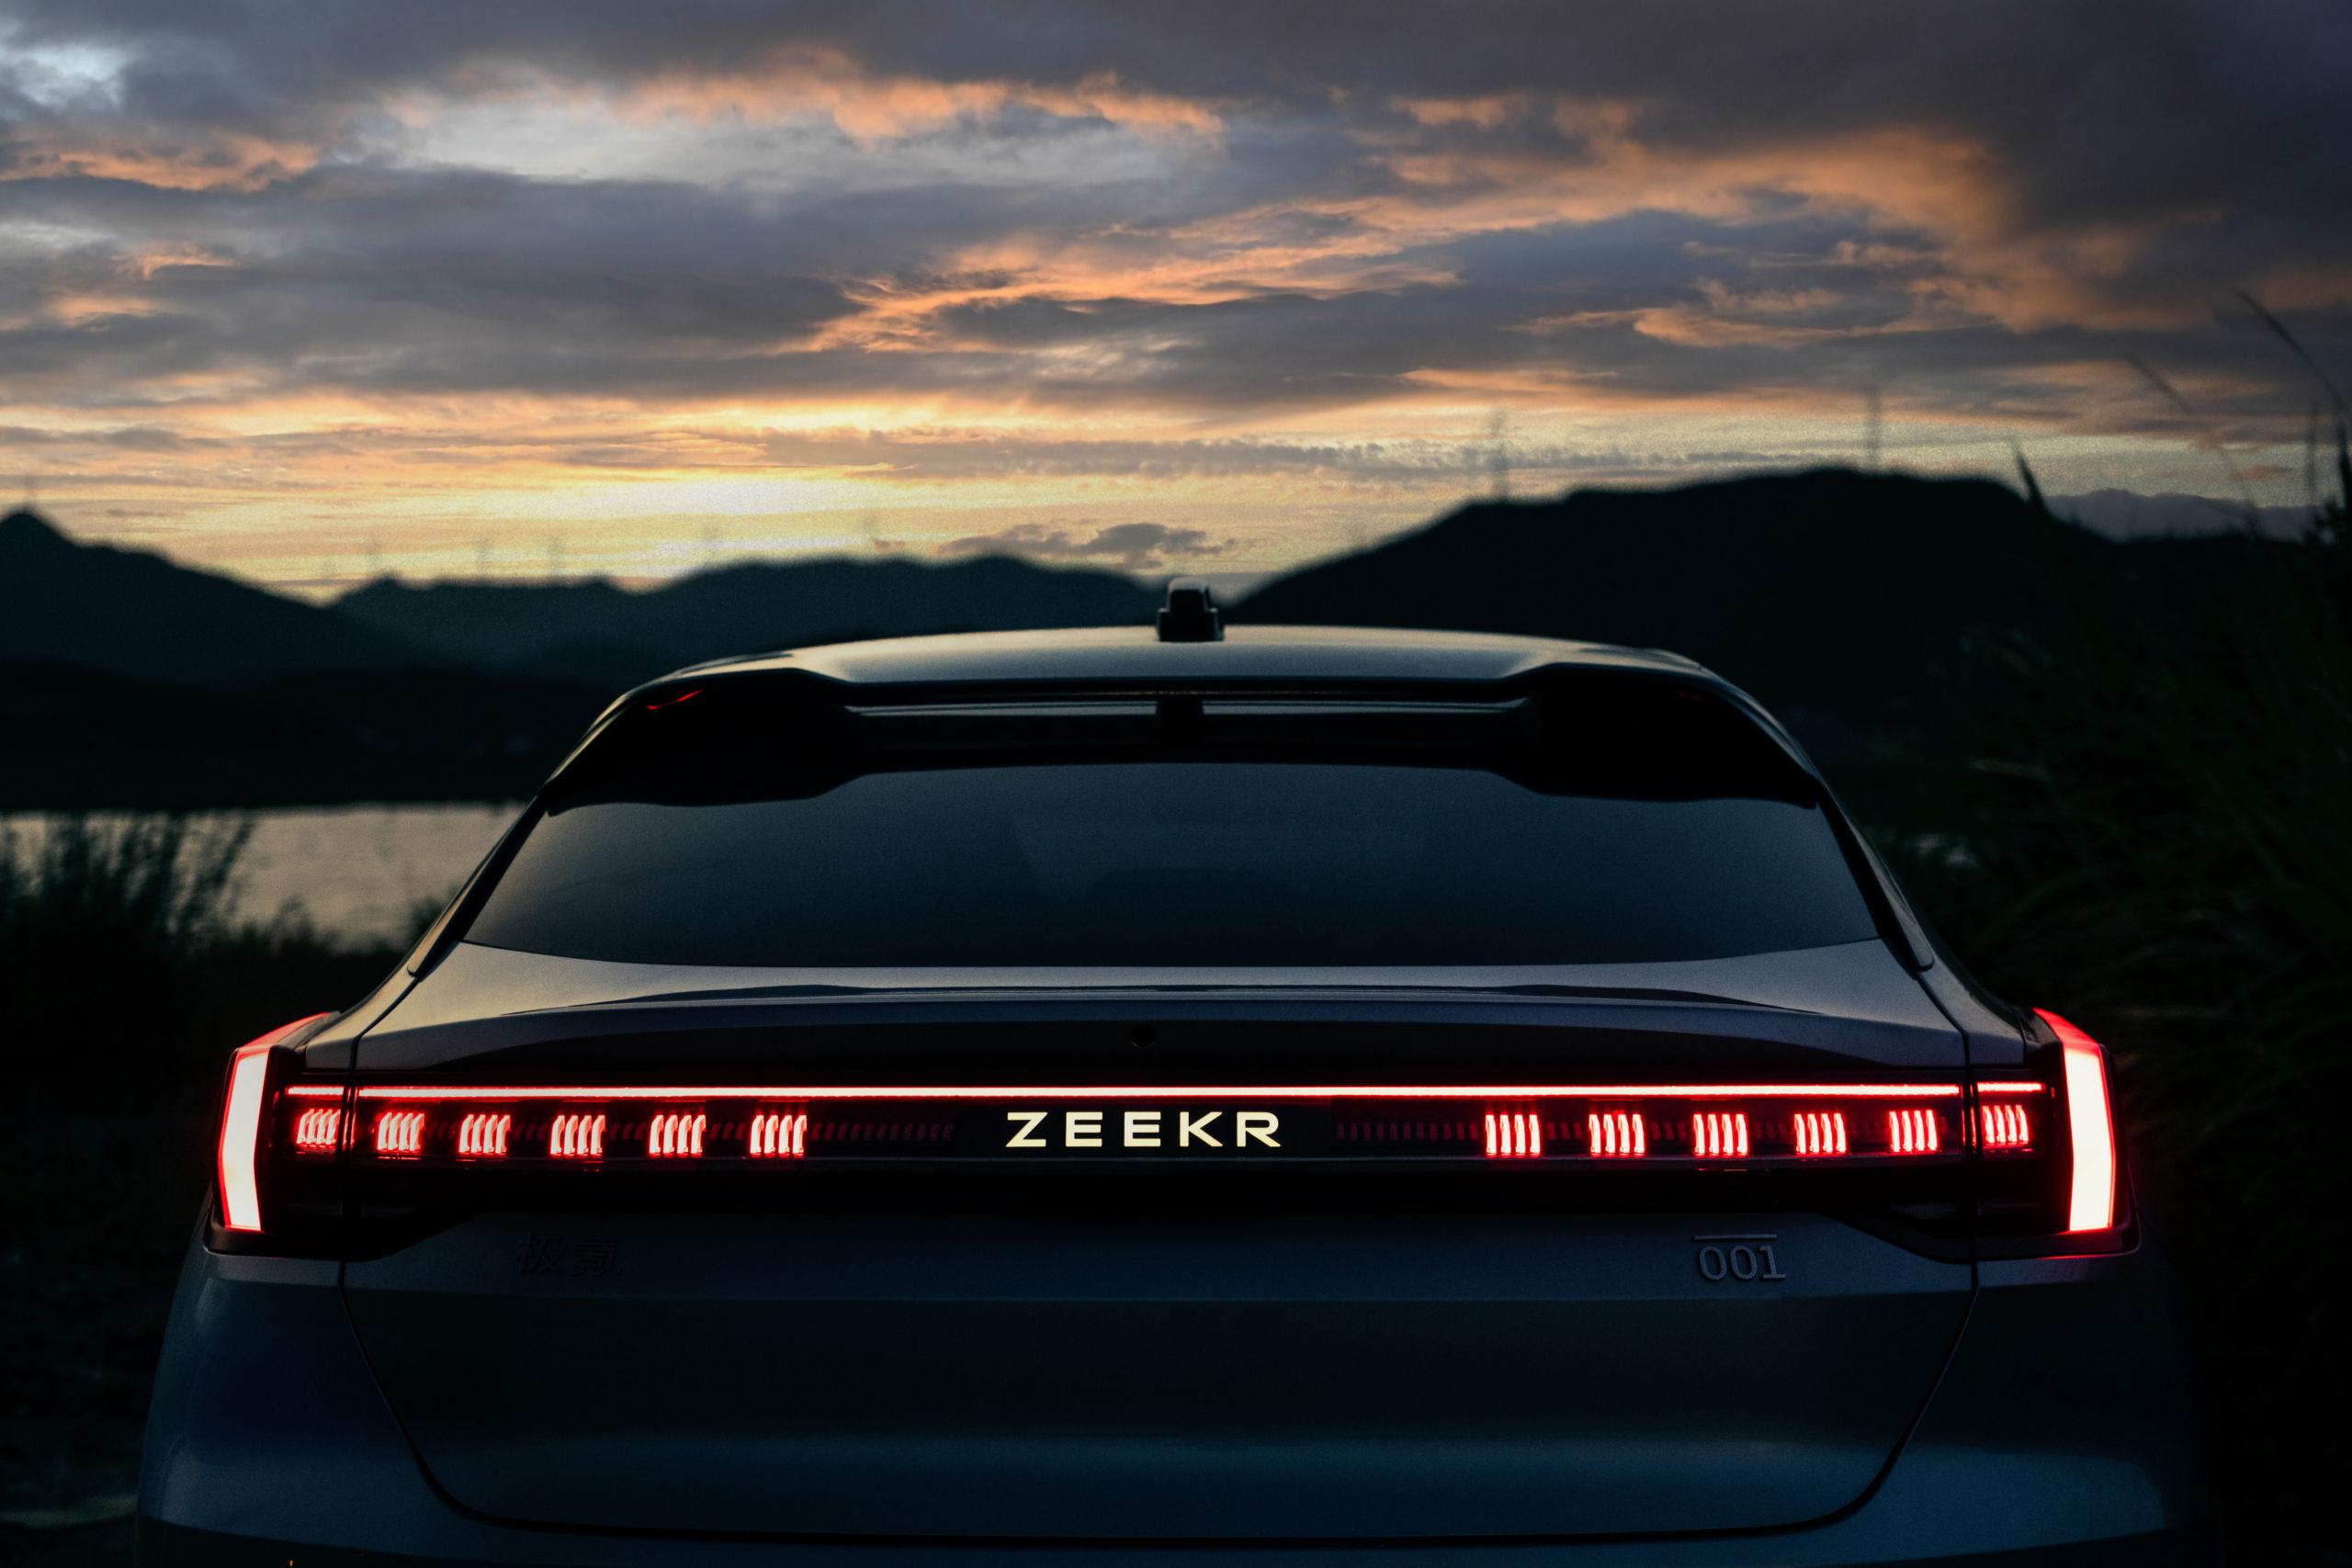 zeekr-001-rear-night-21